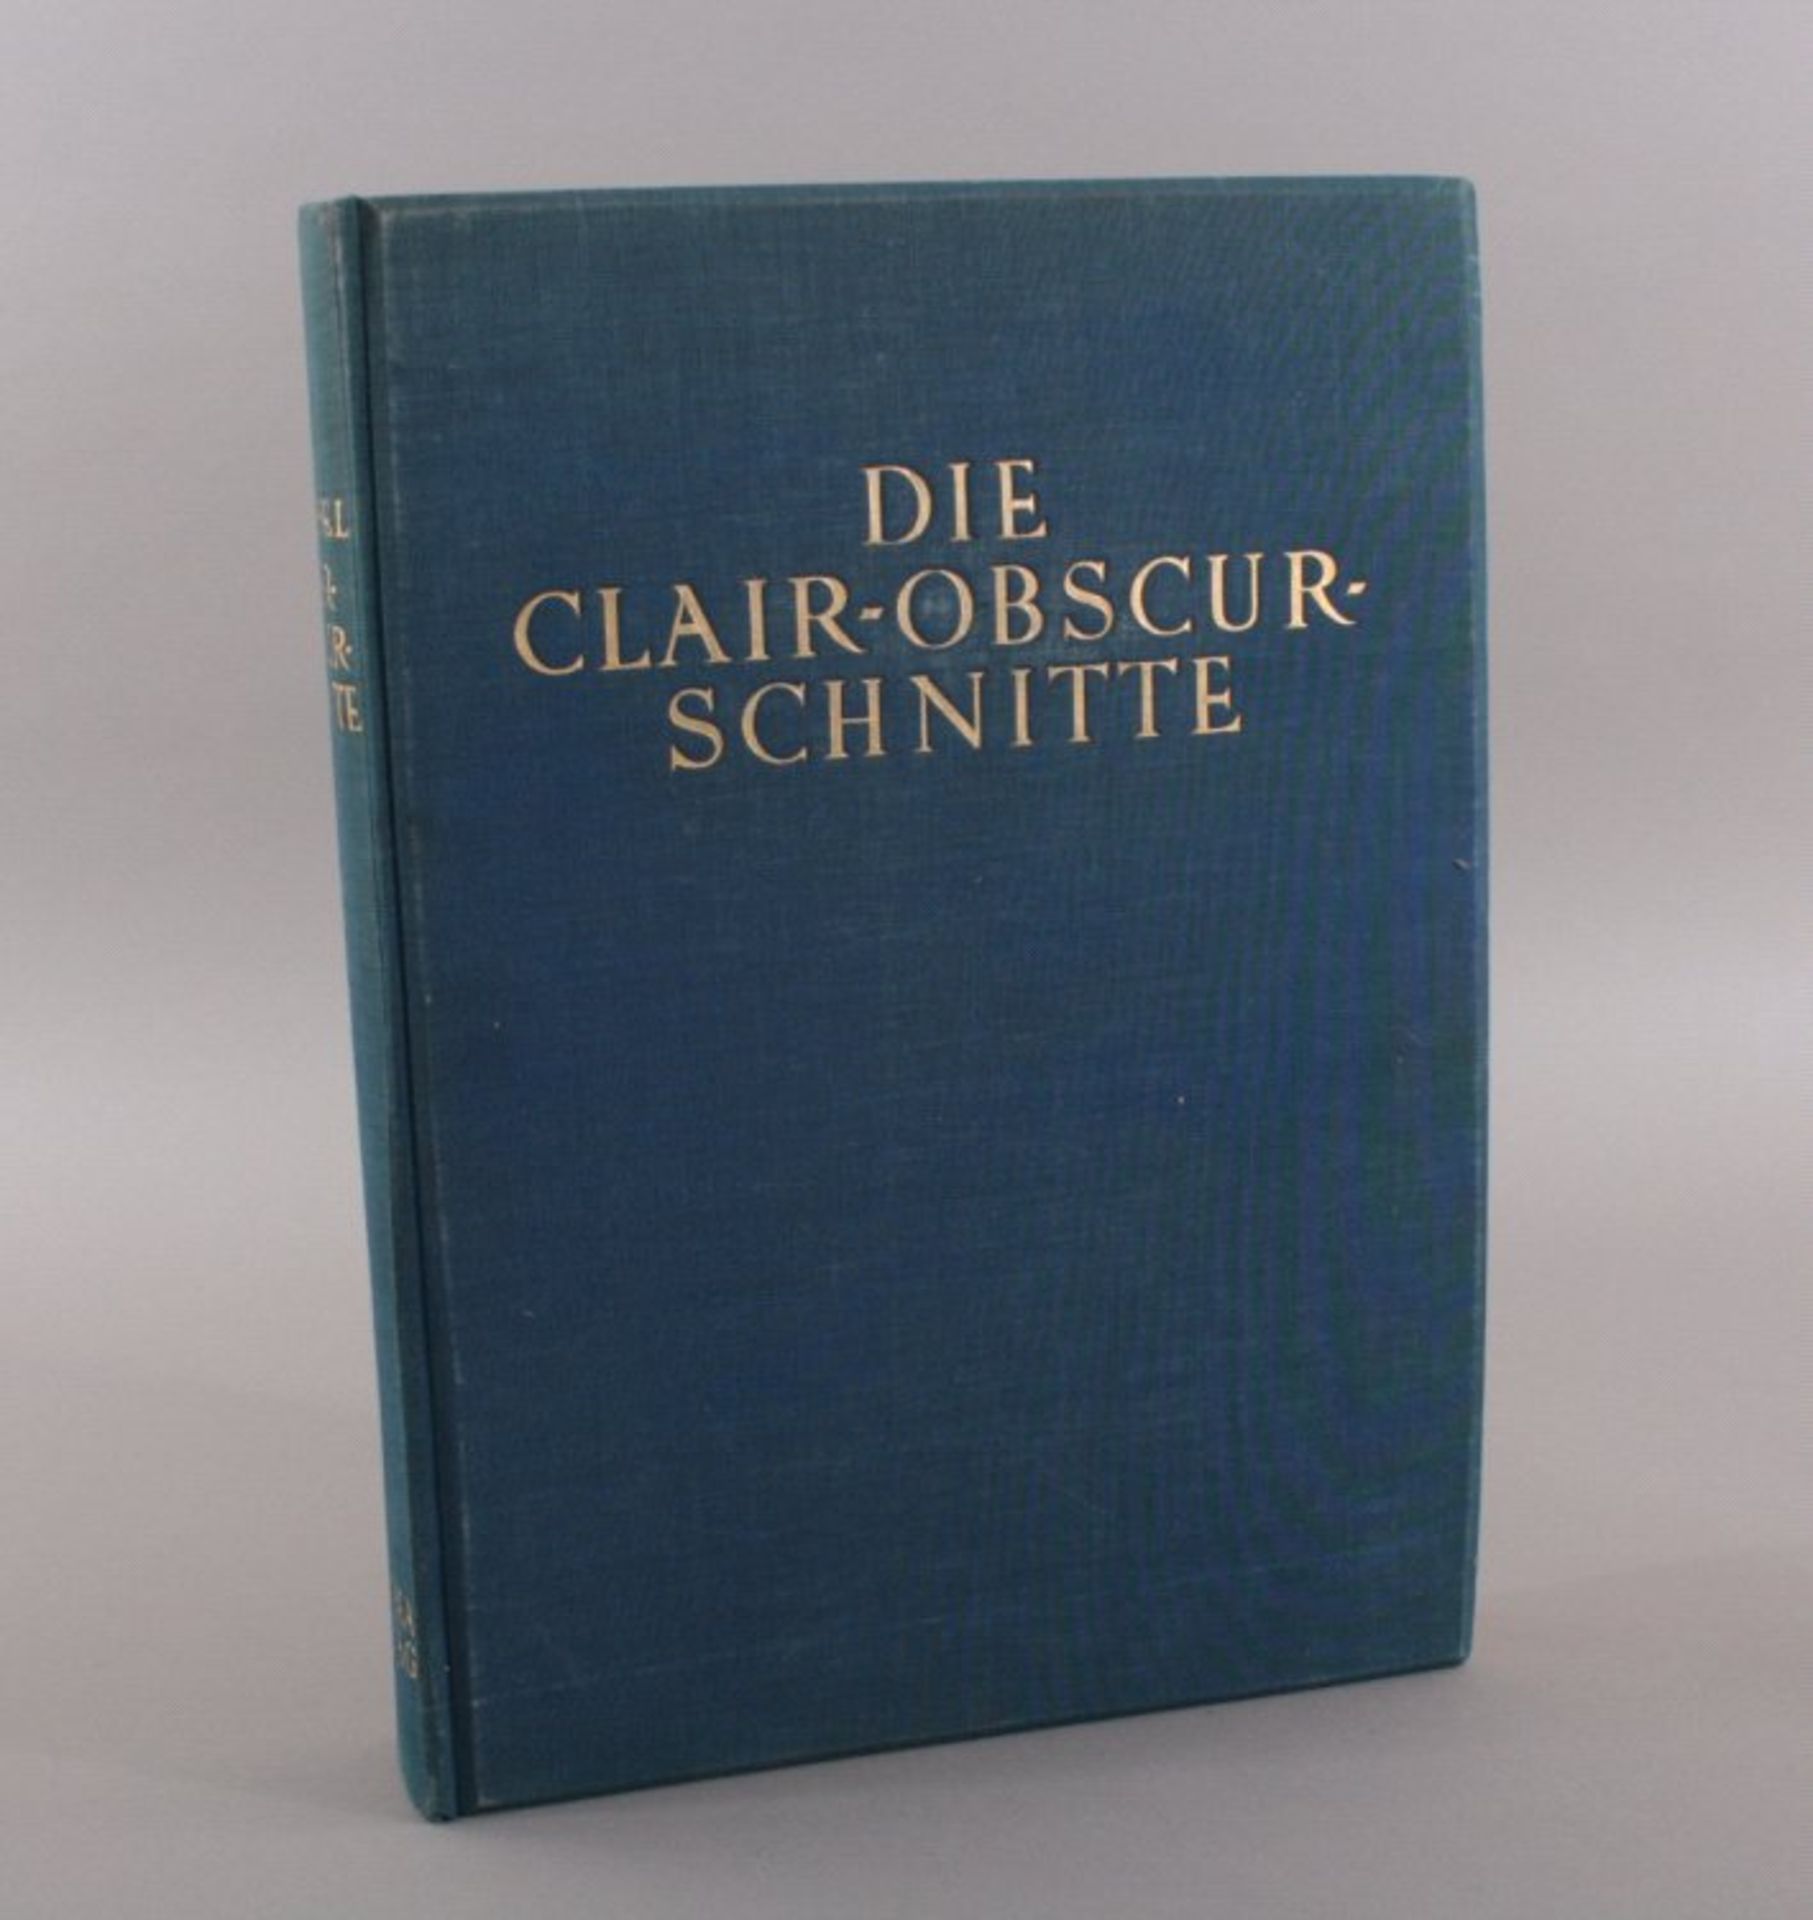 Die Clair-Obscur-Schnitte des XVI., XVII. und XVIII. Jh.OLwd., illustr. OU., 71 S., mit 14